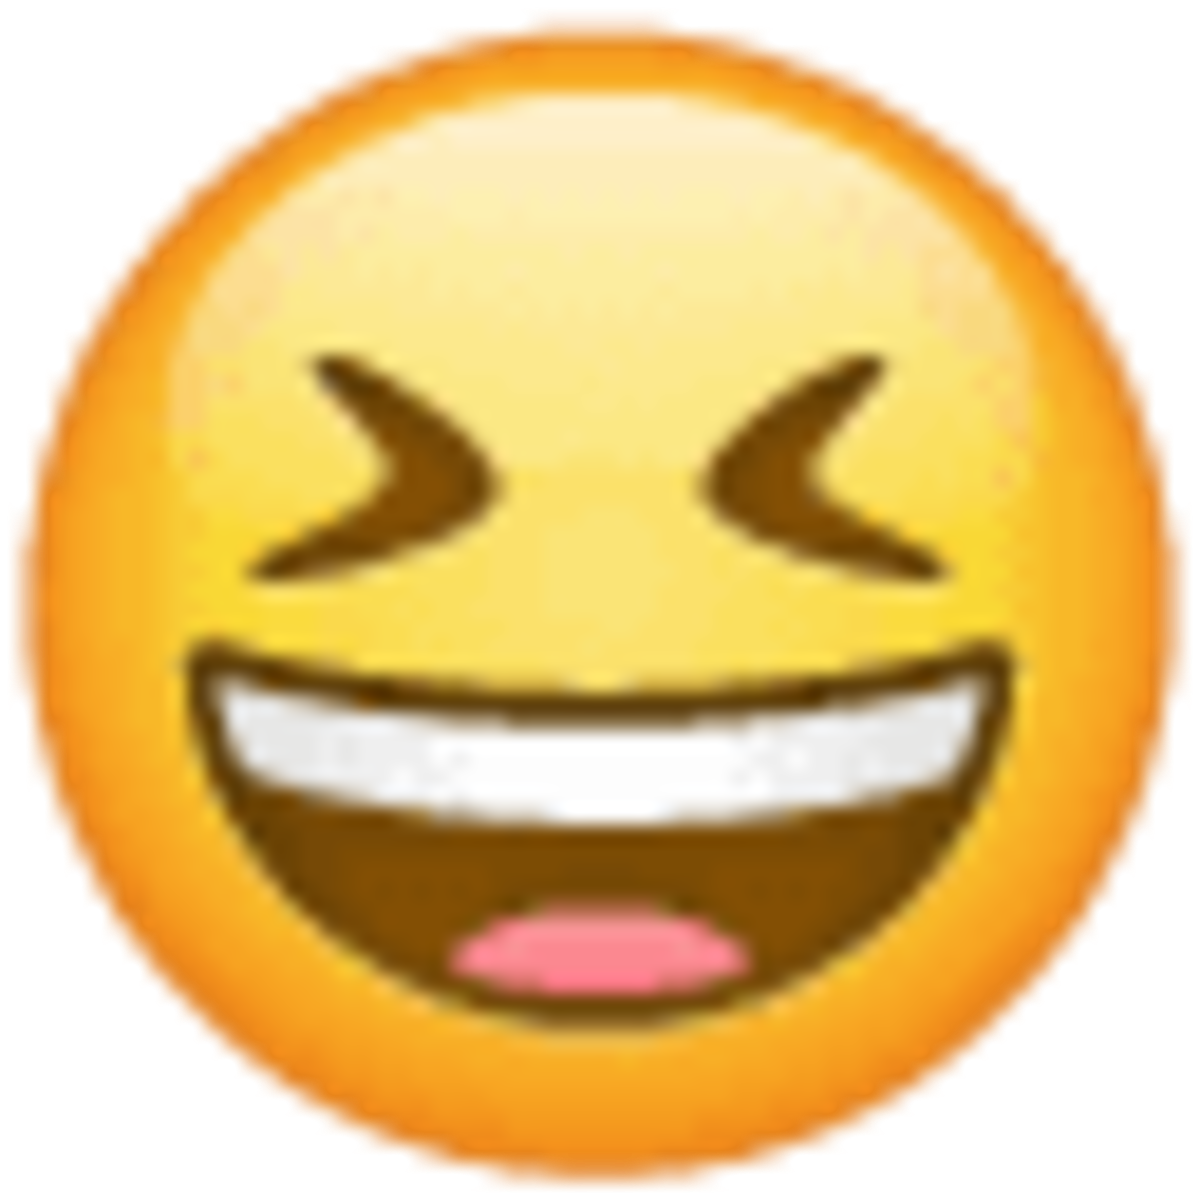 Emoji 1f606, cara con sonrisa y ojos cerrados